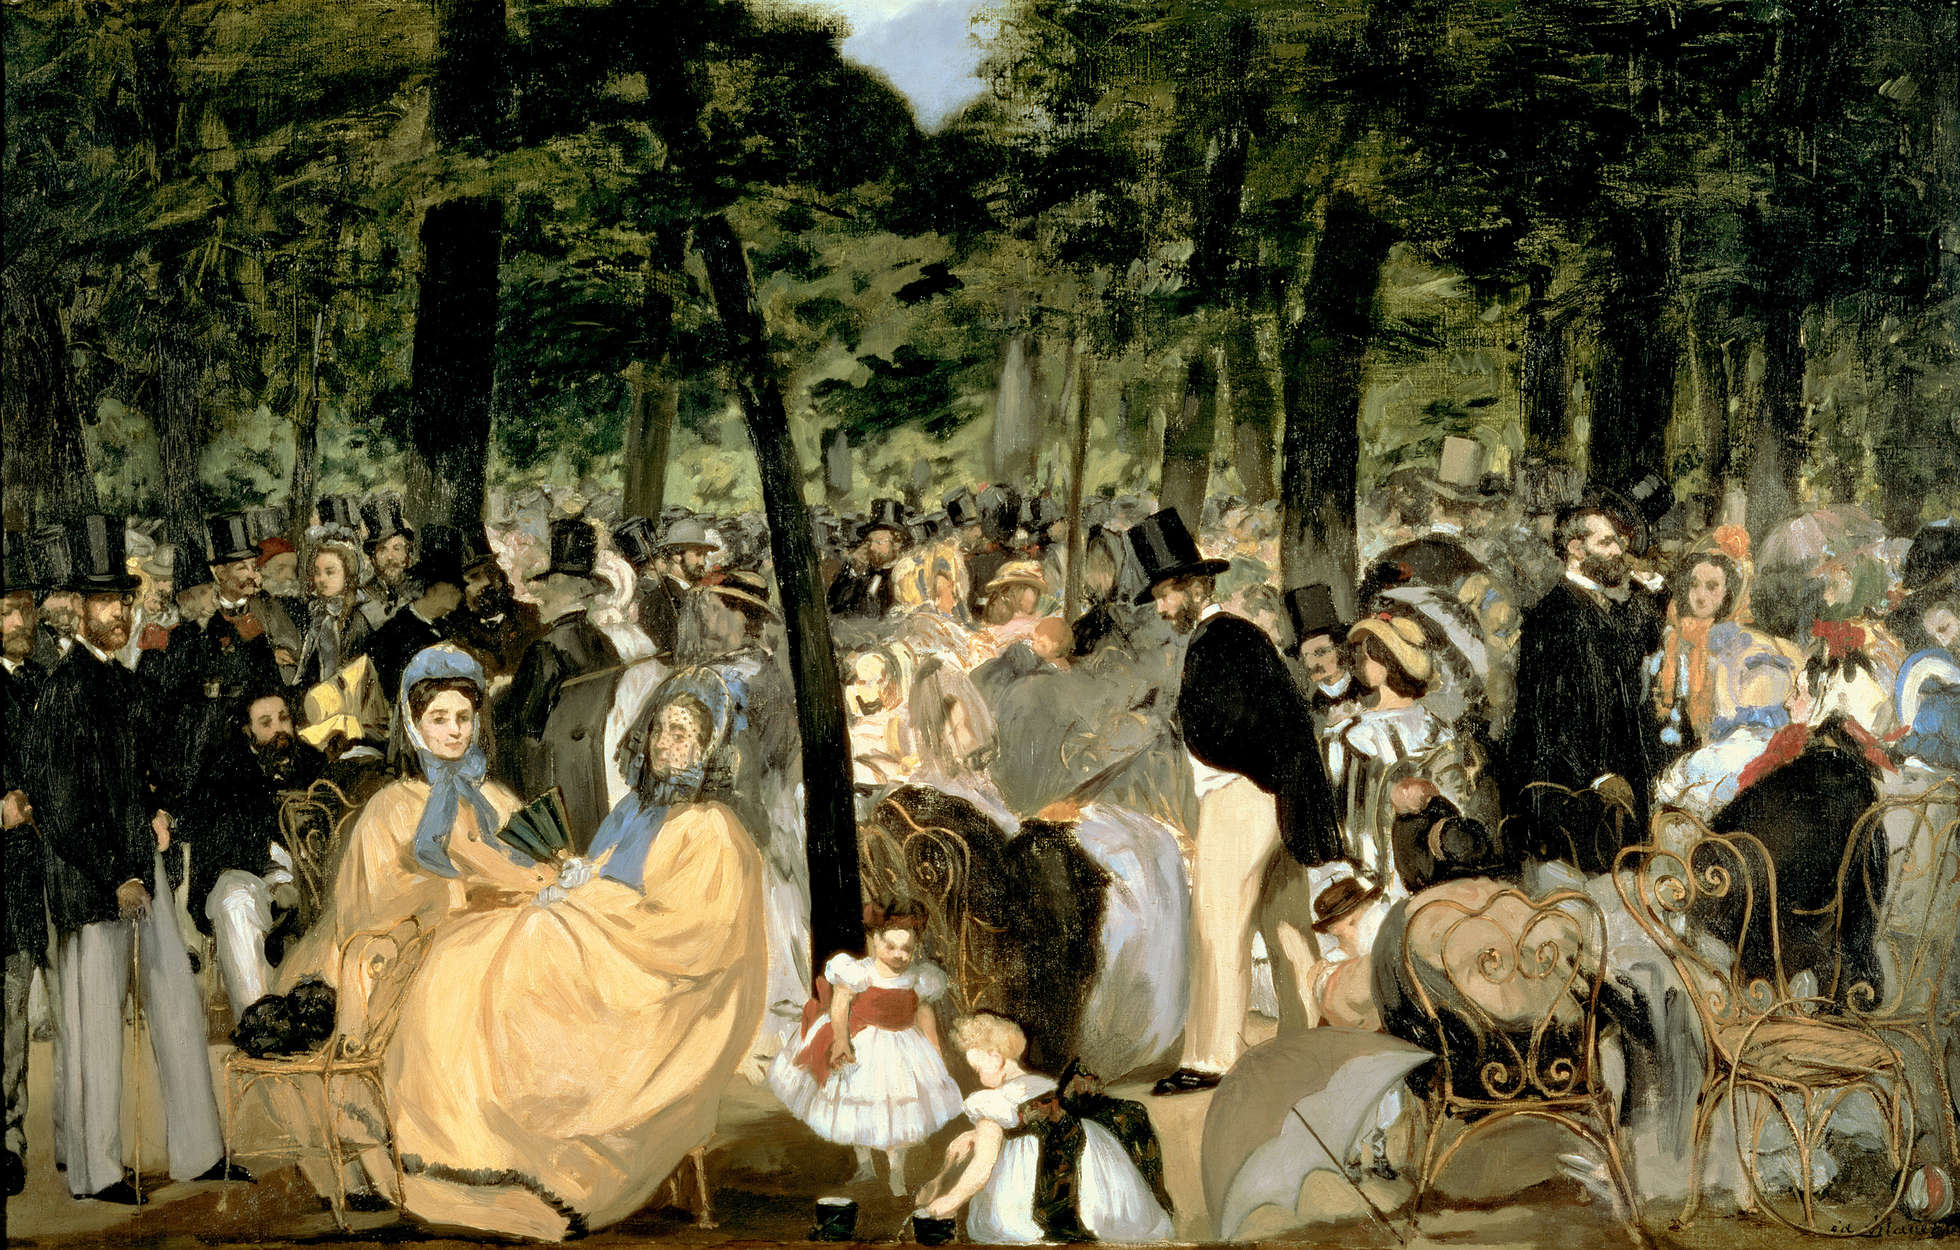             Mural "Música en los jardines de las Tullerías" de Edouard Manet
        